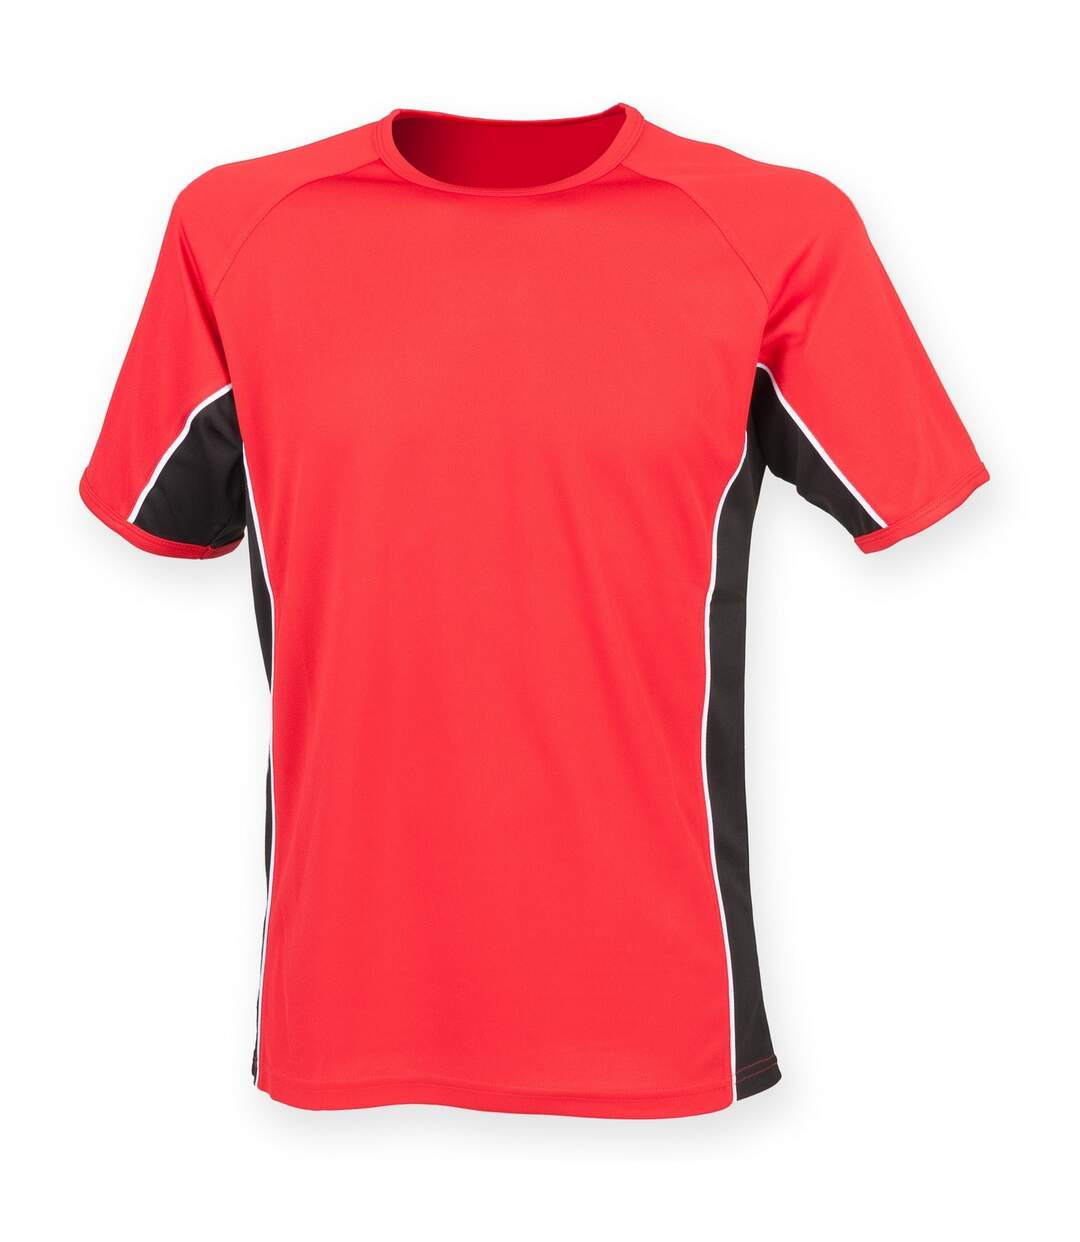 Finden & Hales - T-shirt sport à manches courtes - Homme (Rouge/Noir/Blanc) - UTRW4160